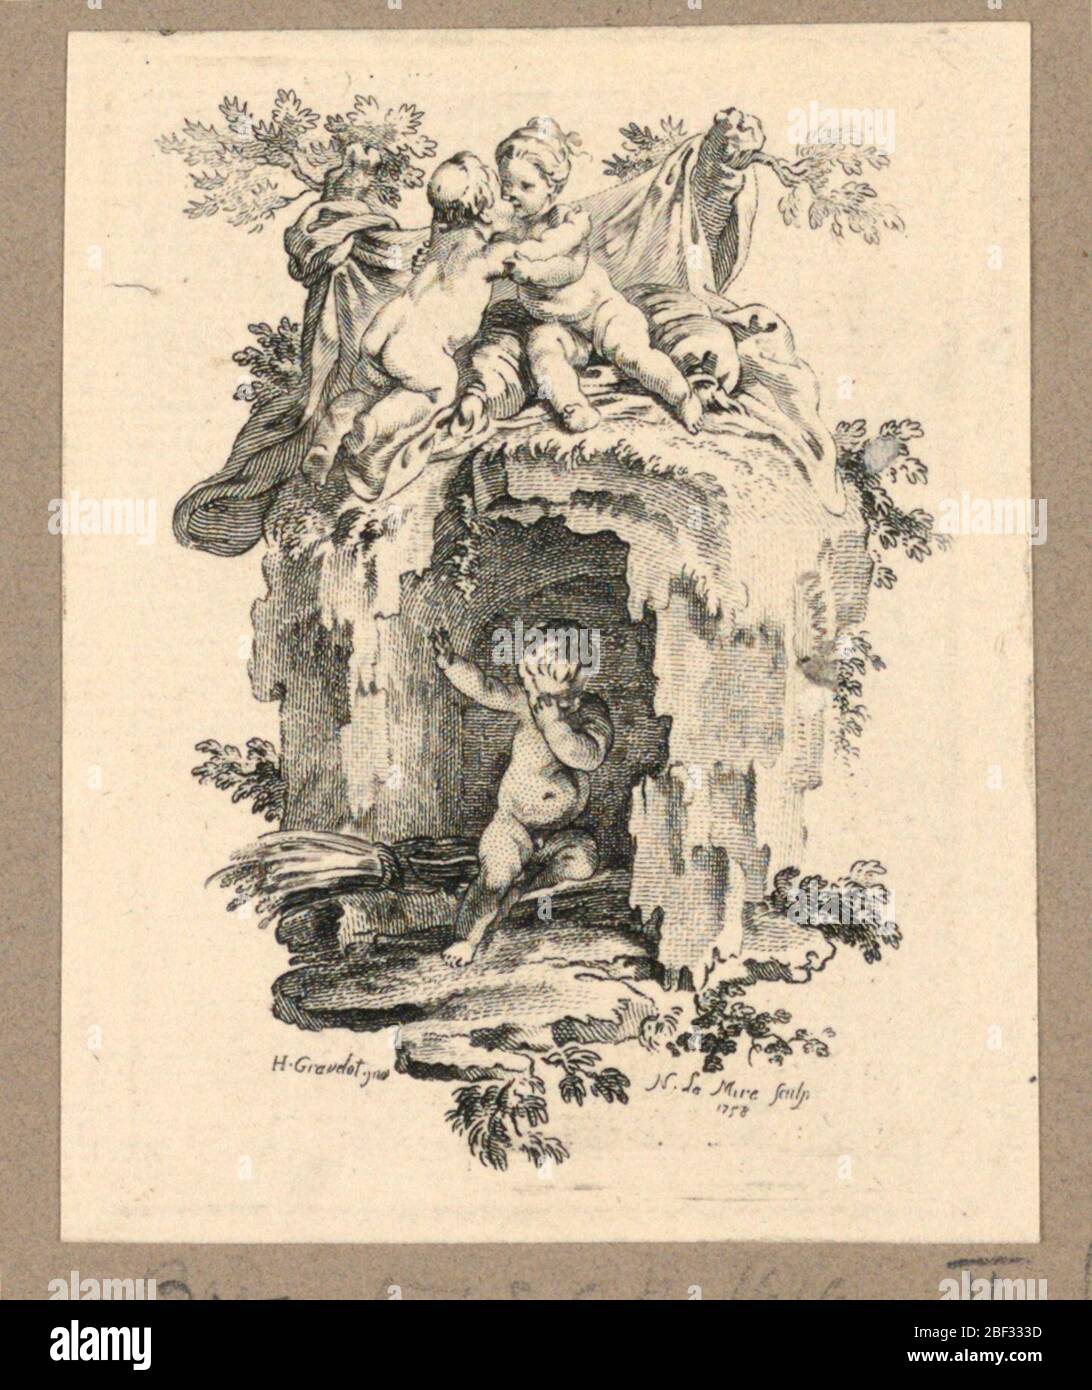 Cherubini intorno a una grotta. Due cherubini si abbracciano l'uno all'altro su una grotta, in hich un ragazzo è tenuto prigioniero. Foto Stock